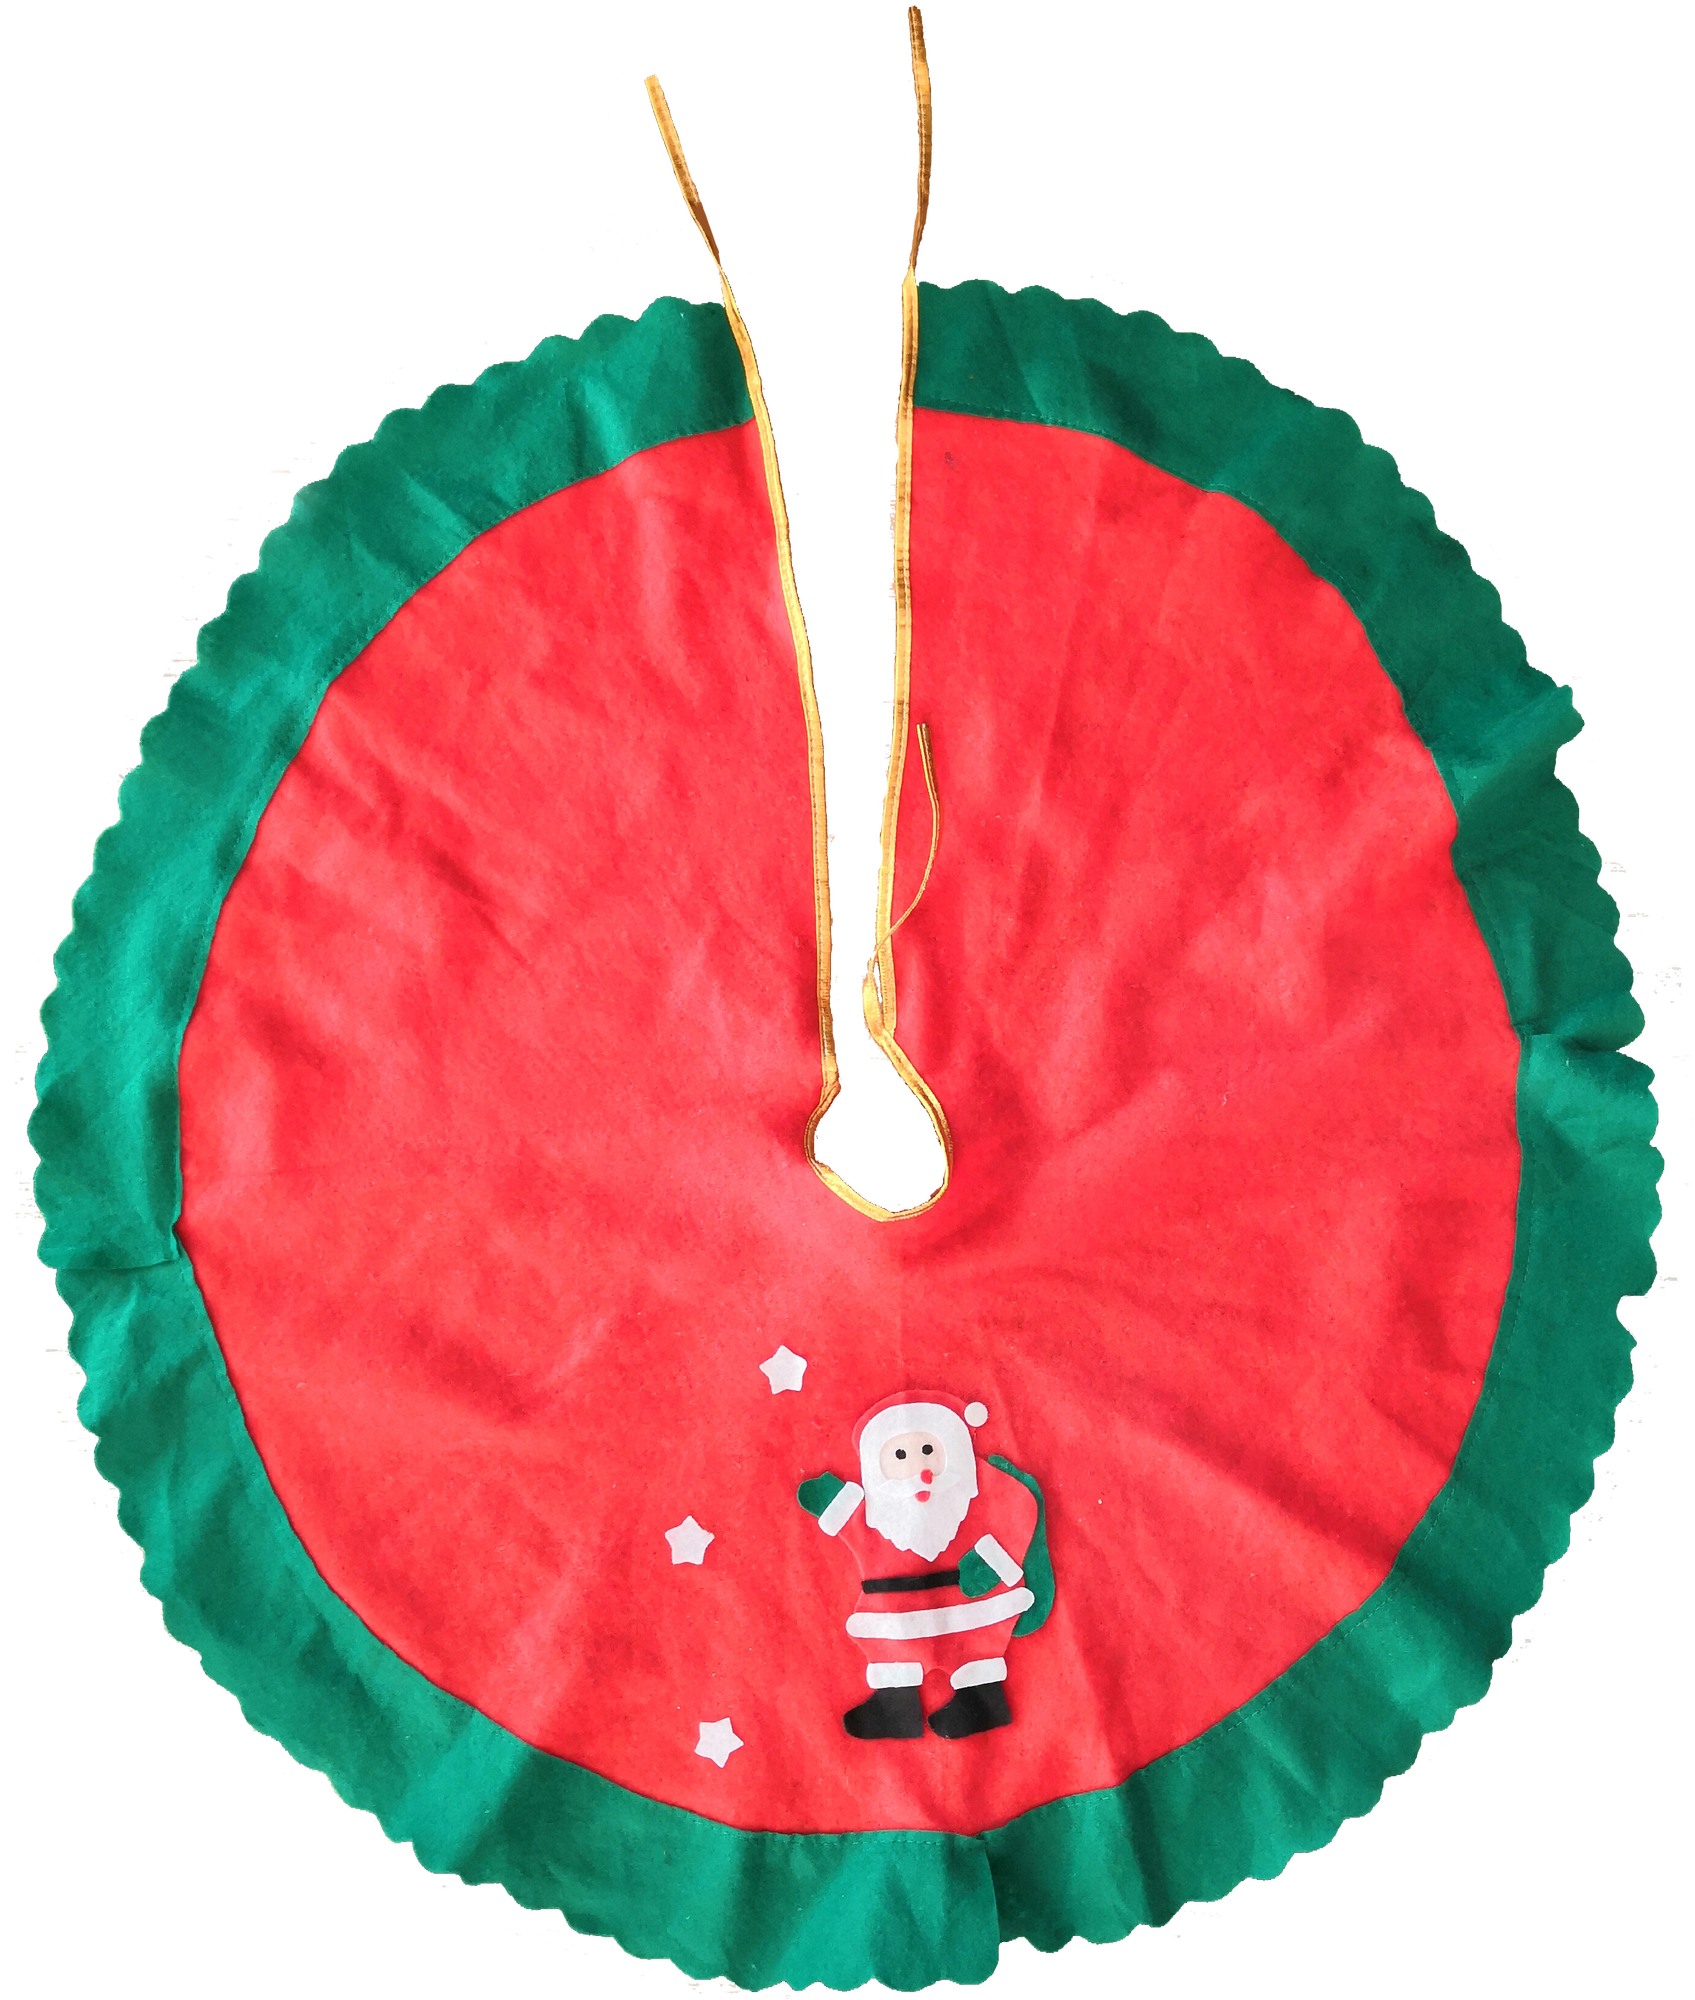 Юбка для ёлки «Рождественские мотивы», 90 см в Москве – купить по низкой цене в интернет-магазине Леруа Мерлен